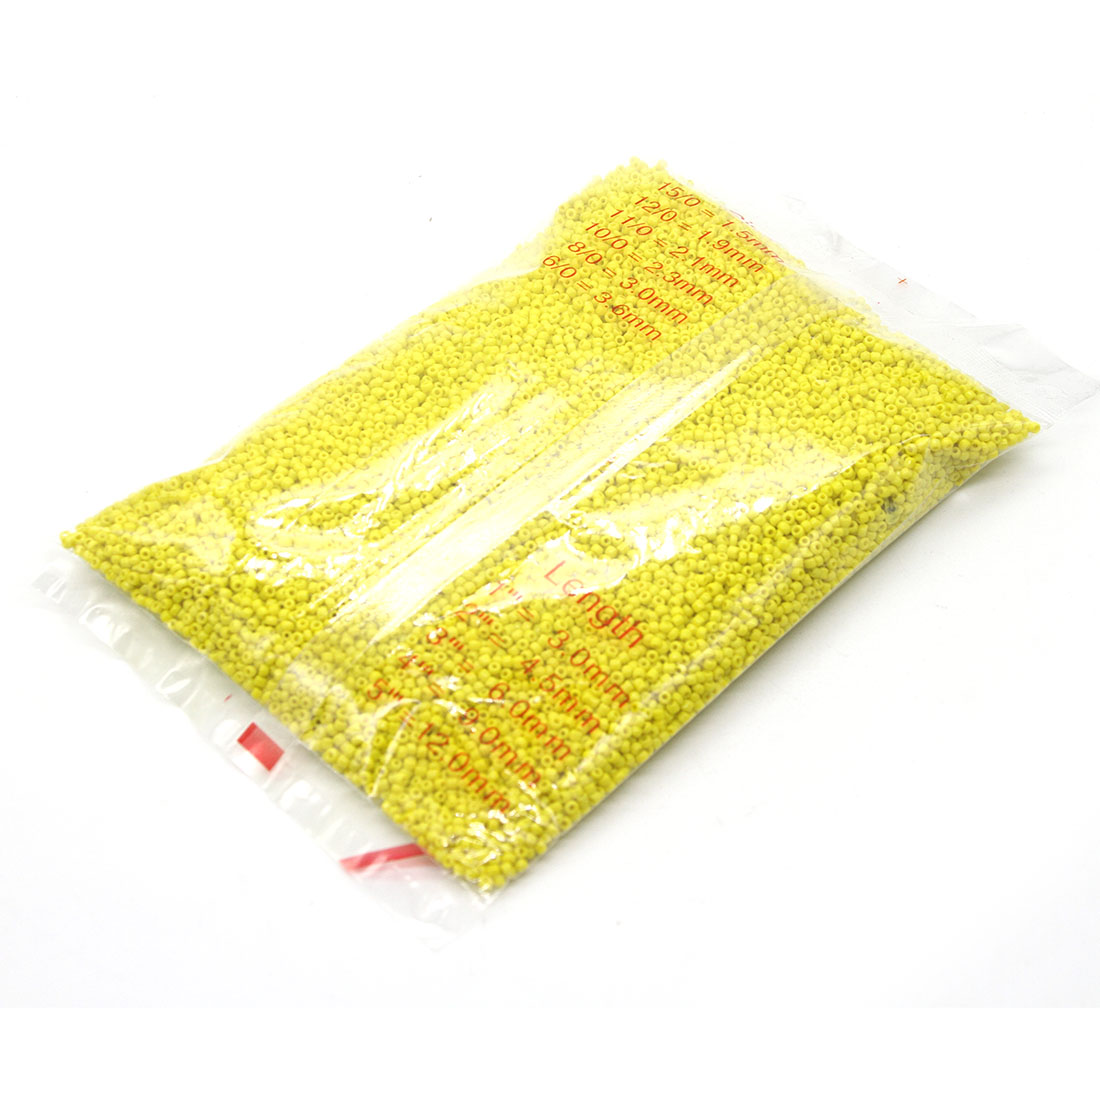 Yellow 3mm 10,000 packs